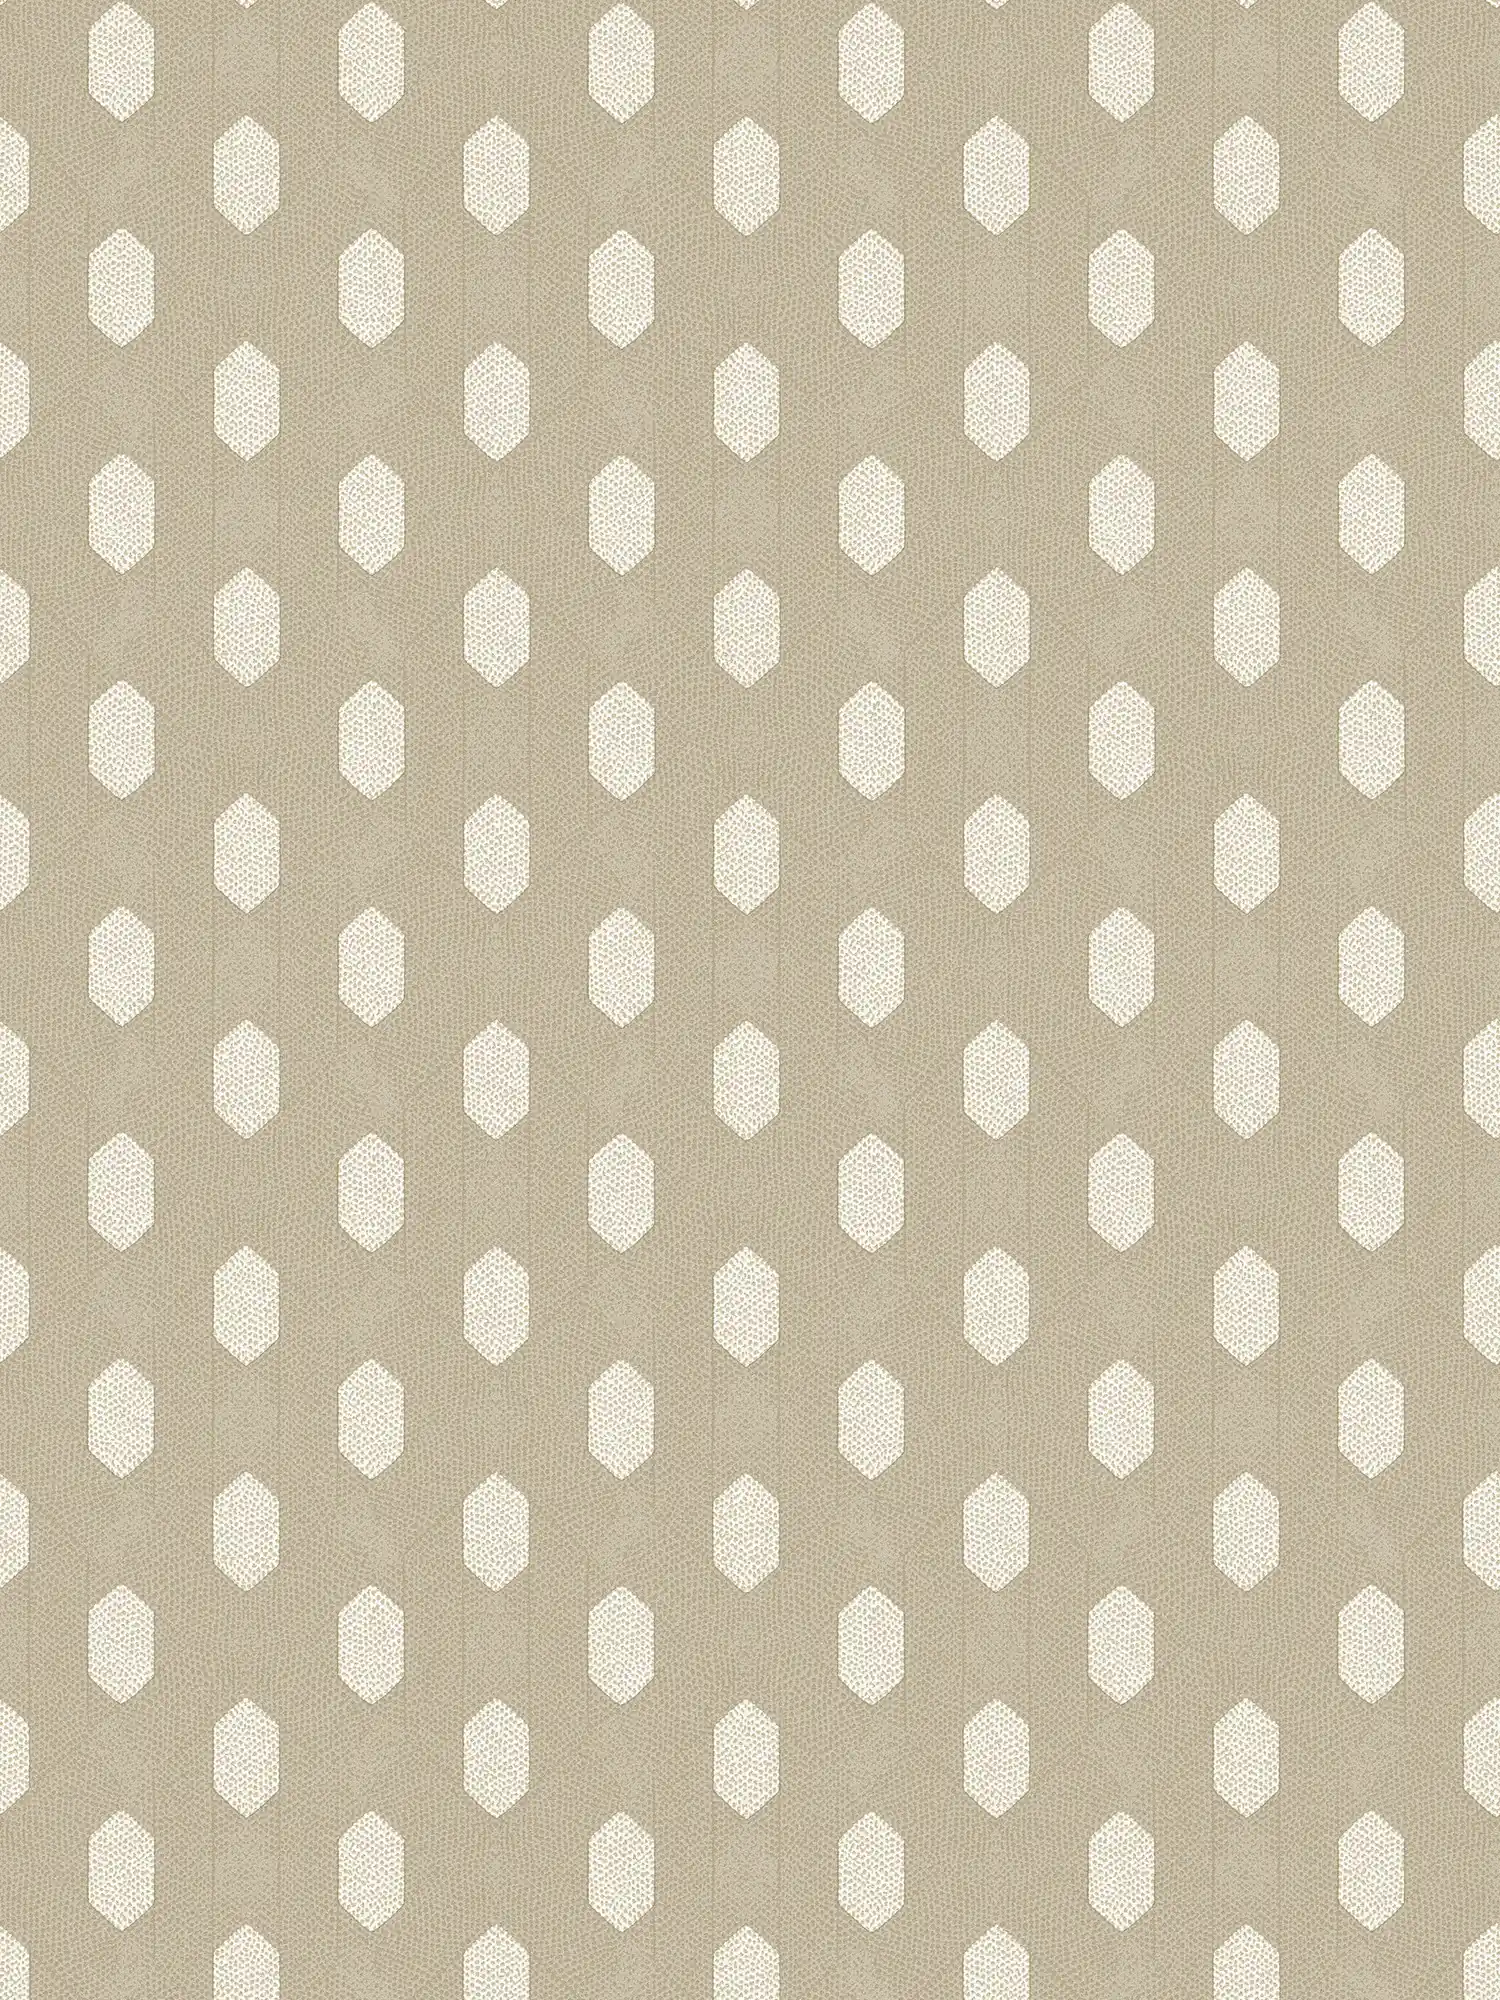 Beige papier peint intissé motif géométrique - crème, or, beige
